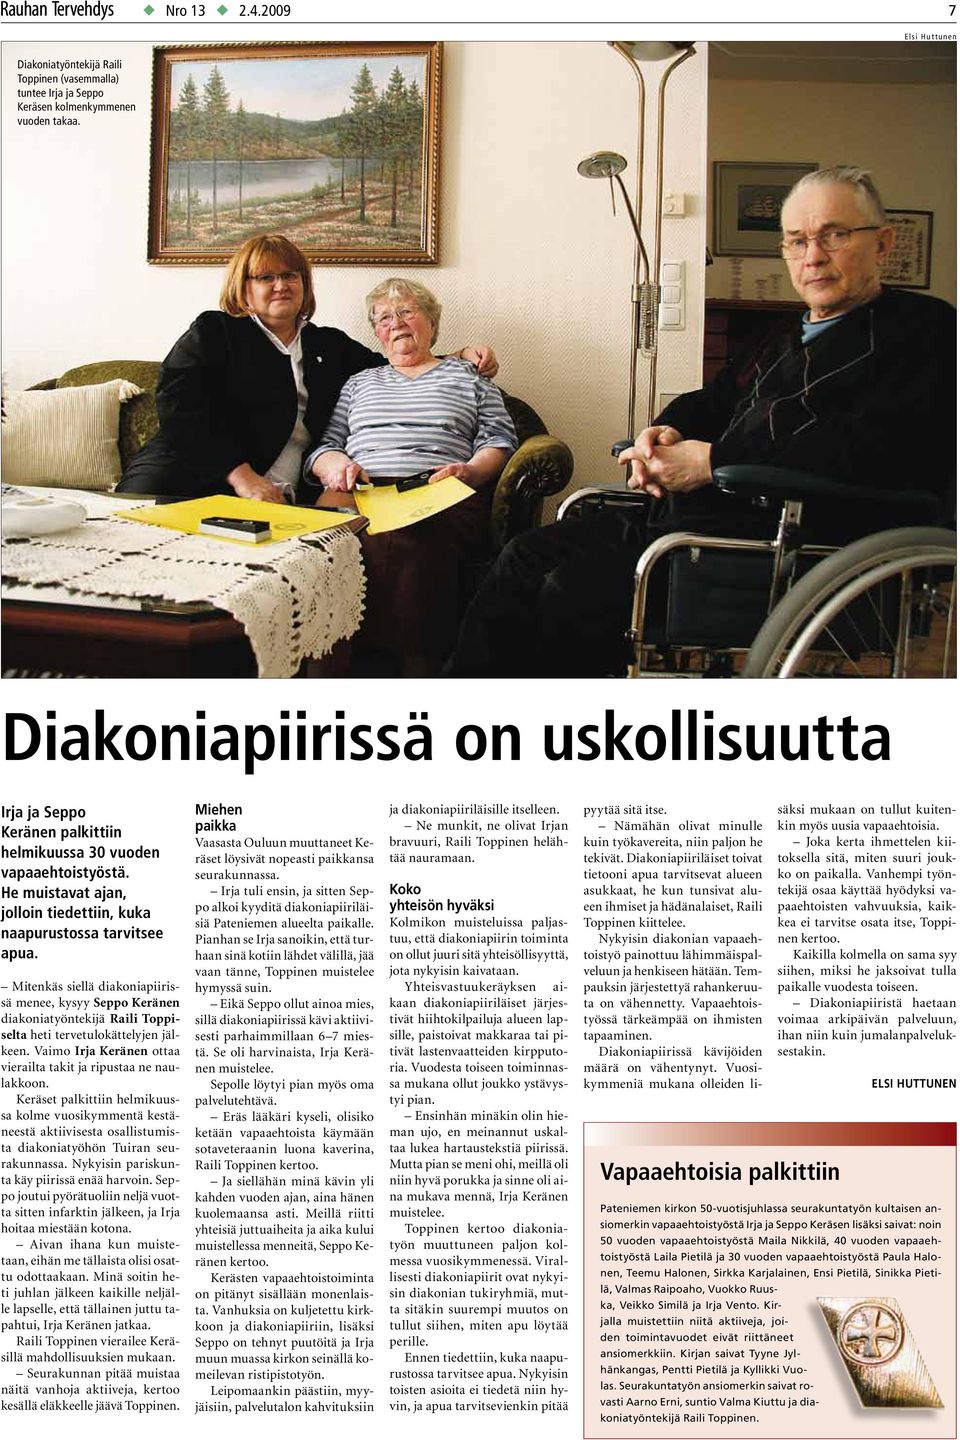 Mitenkäs siellä diakoniapiirissä menee, kysyy Seppo Keränen diakoniatyöntekijä Raili Toppiselta heti tervetulokättelyjen jälkeen. Vaimo Irja Keränen ottaa vierailta takit ja ripustaa ne naulakkoon.